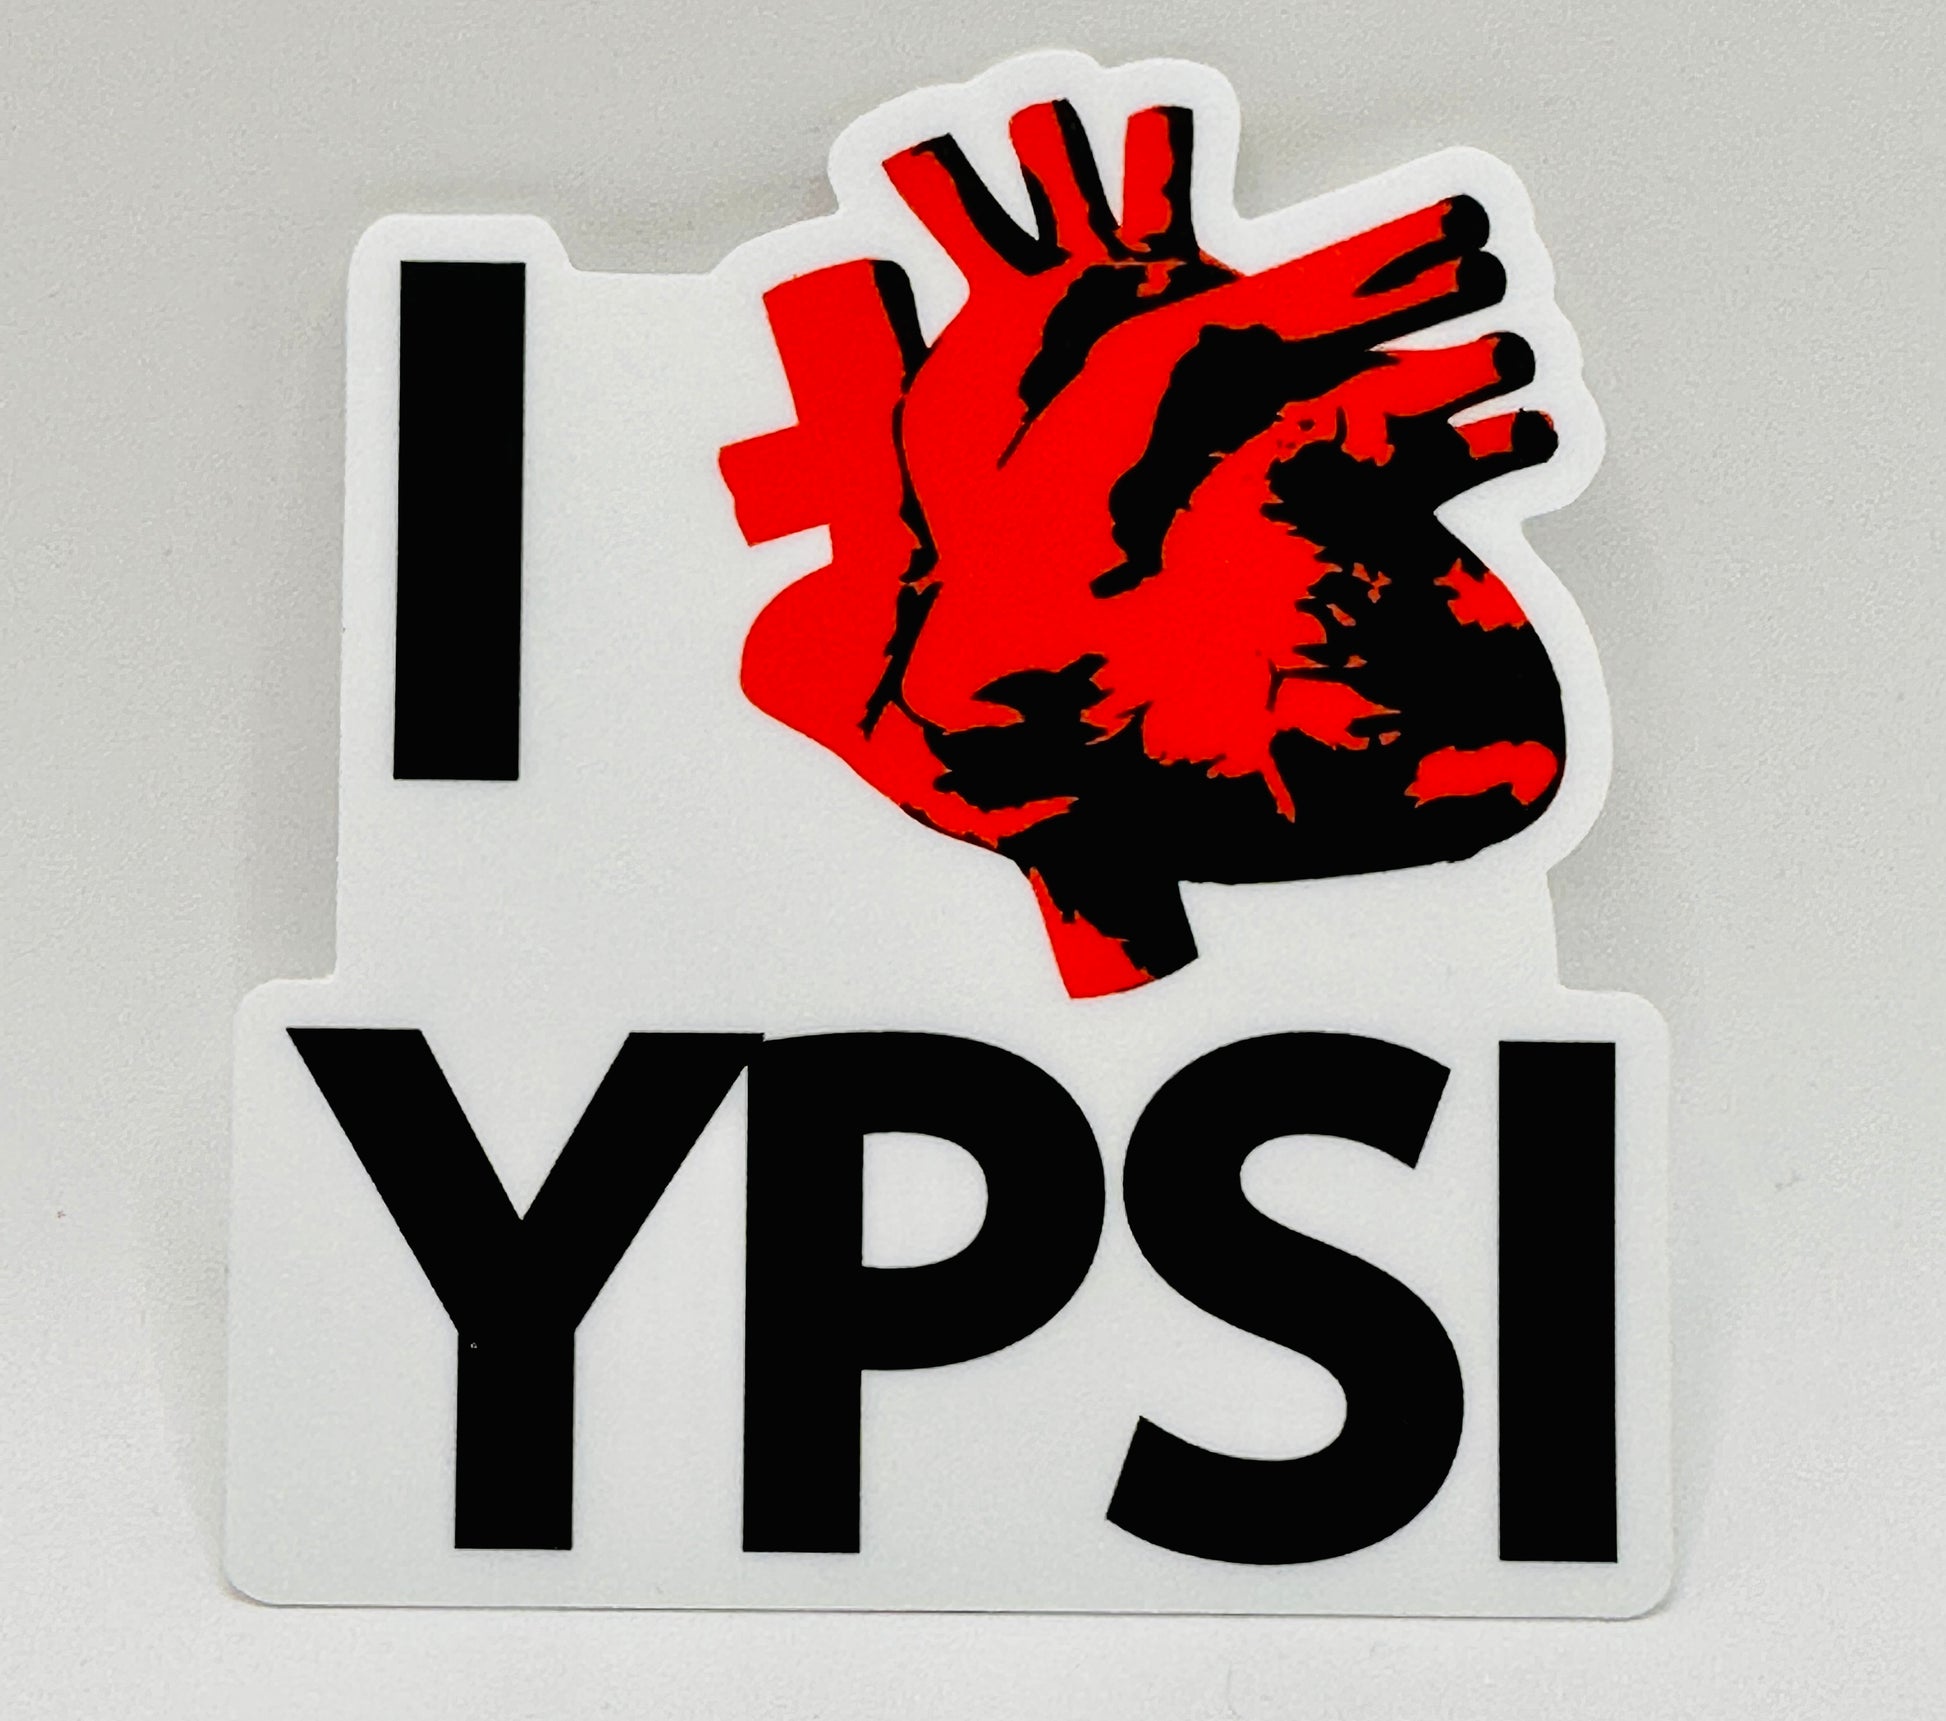 I Real Heart Ypsi Vinyl Sticker